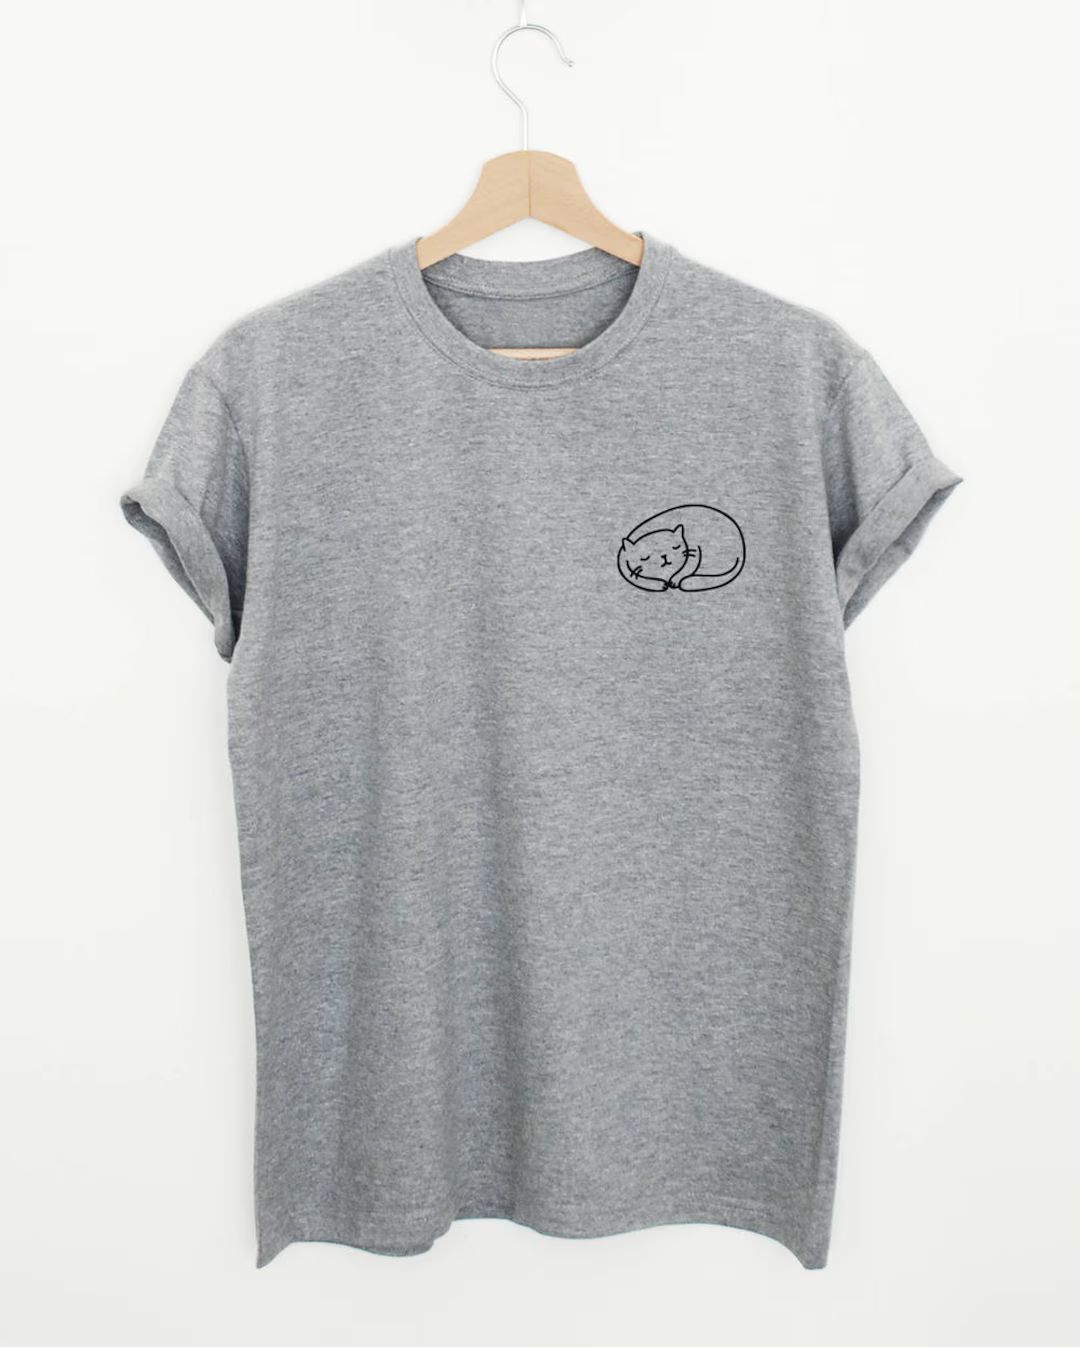 Pocket cat print T-shirt, cute sleeping cat shirt, funny womens or unisex pocket cat shirt, cat o... | Etsy (US)